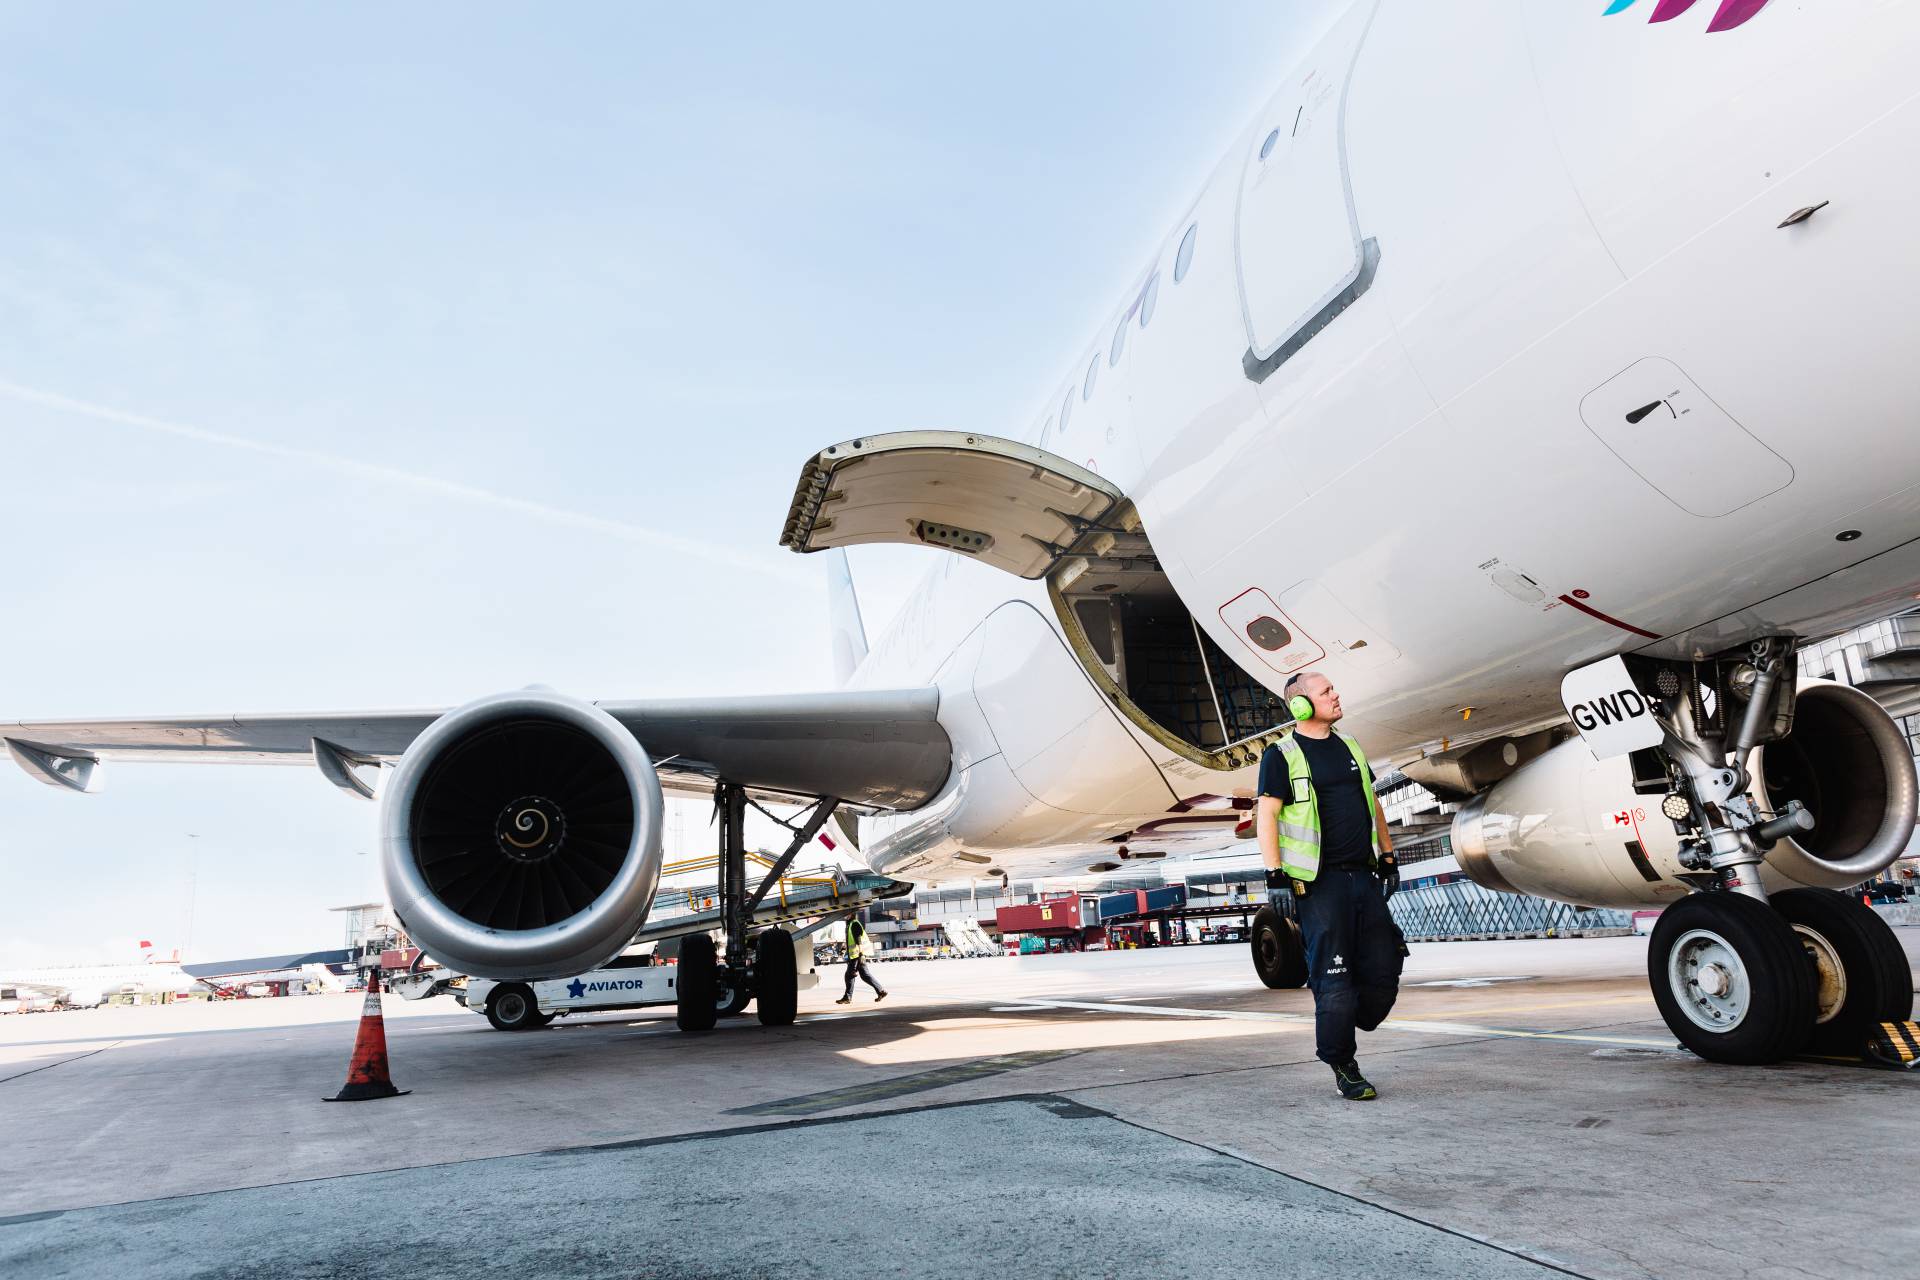 Agent obsługi klienta Aviator przedłuża współpracę z Finnairem na kolejne 5 lat na lotnisku w Helsinkach